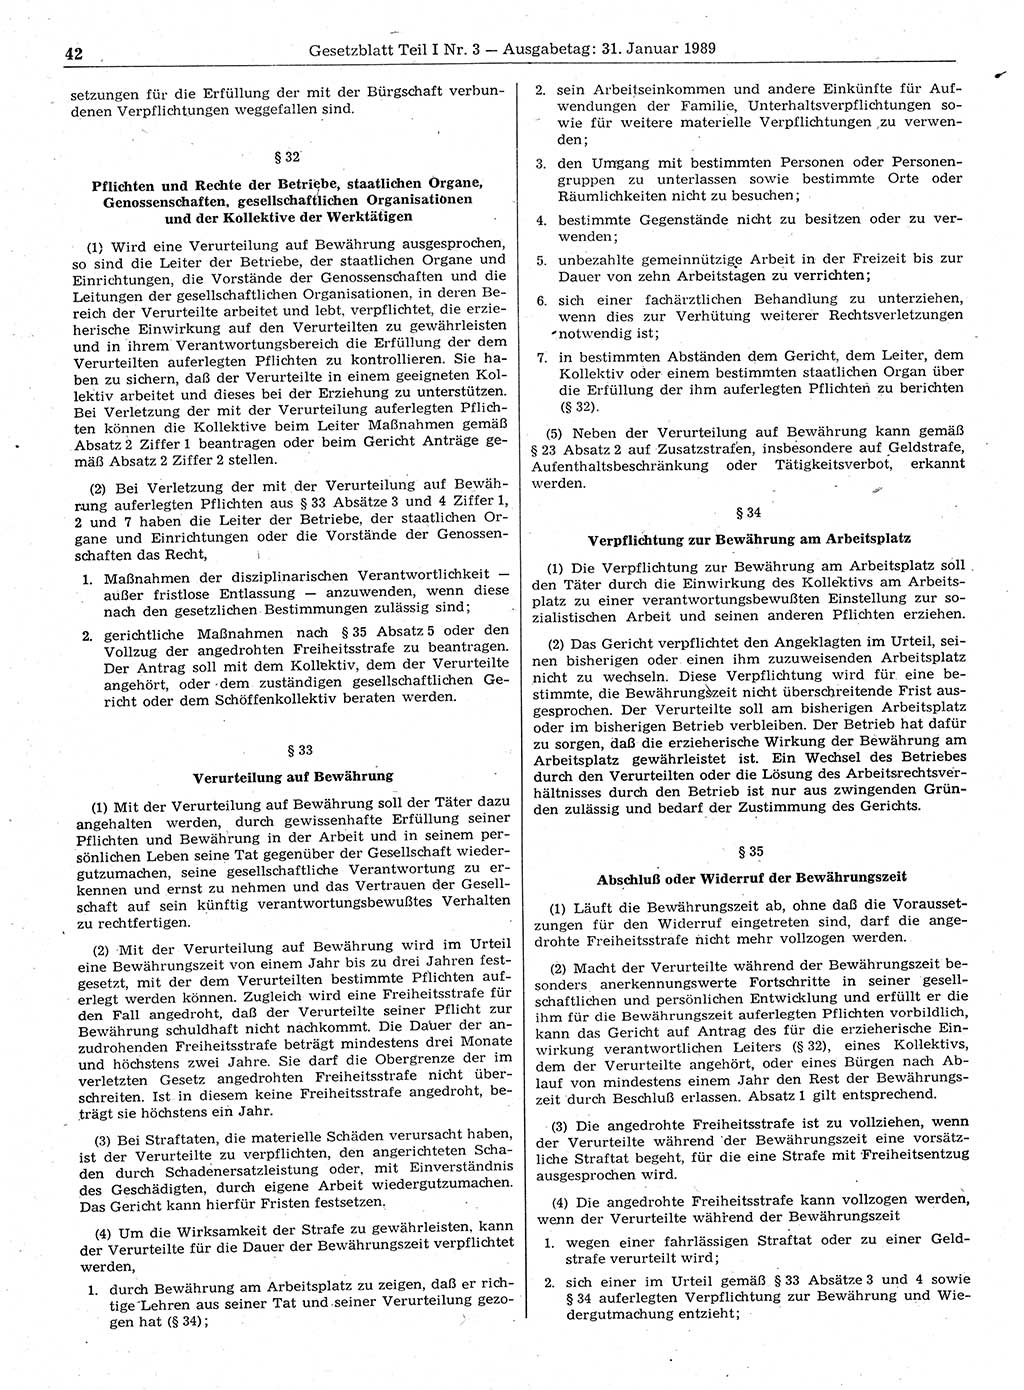 Gesetzblatt (GBl.) der Deutschen Demokratischen Republik (DDR) Teil Ⅰ 1989, Seite 42 (GBl. DDR Ⅰ 1989, S. 42)